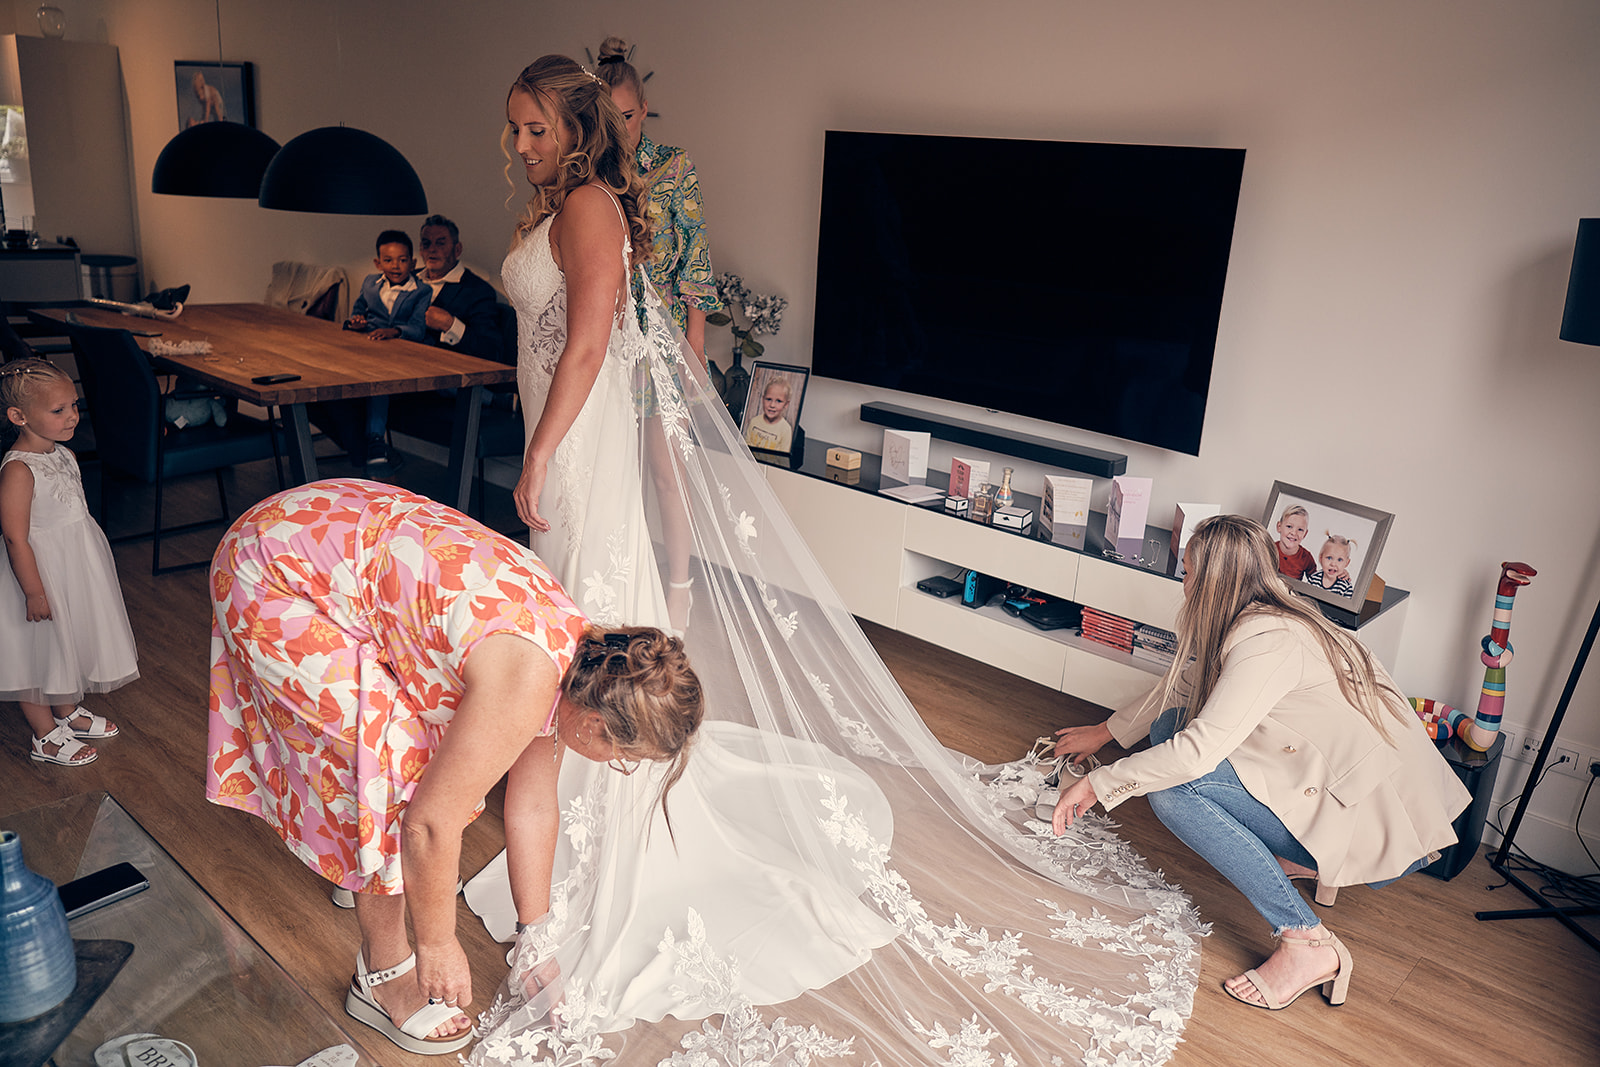 Trouwfotograaf Kasteel Hooge Vuursche in Baarn - De bruidsfotografie van Dennis en Kim - voorbereidingen